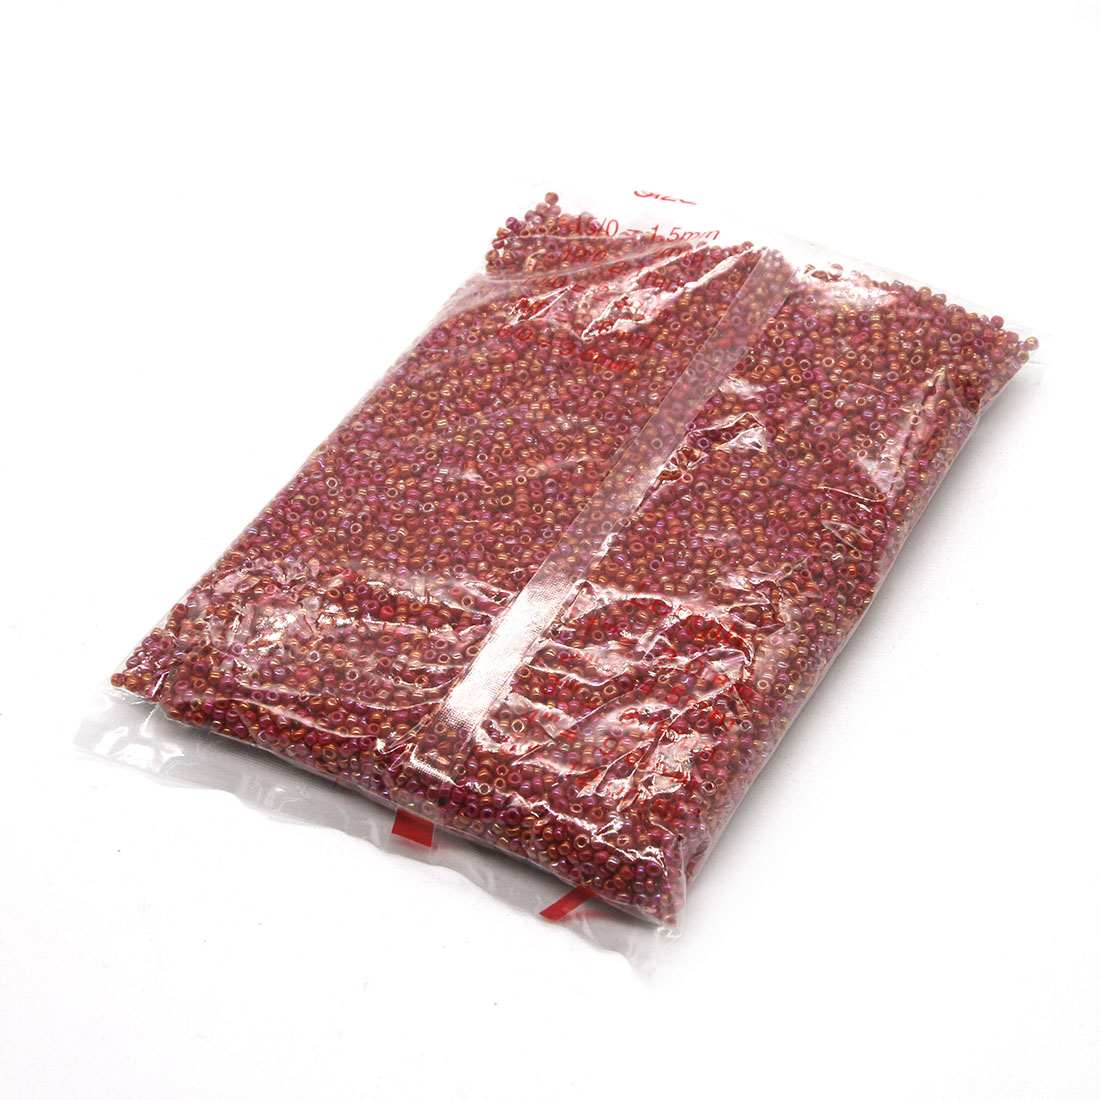 Crimson 3mm 10,000 packs